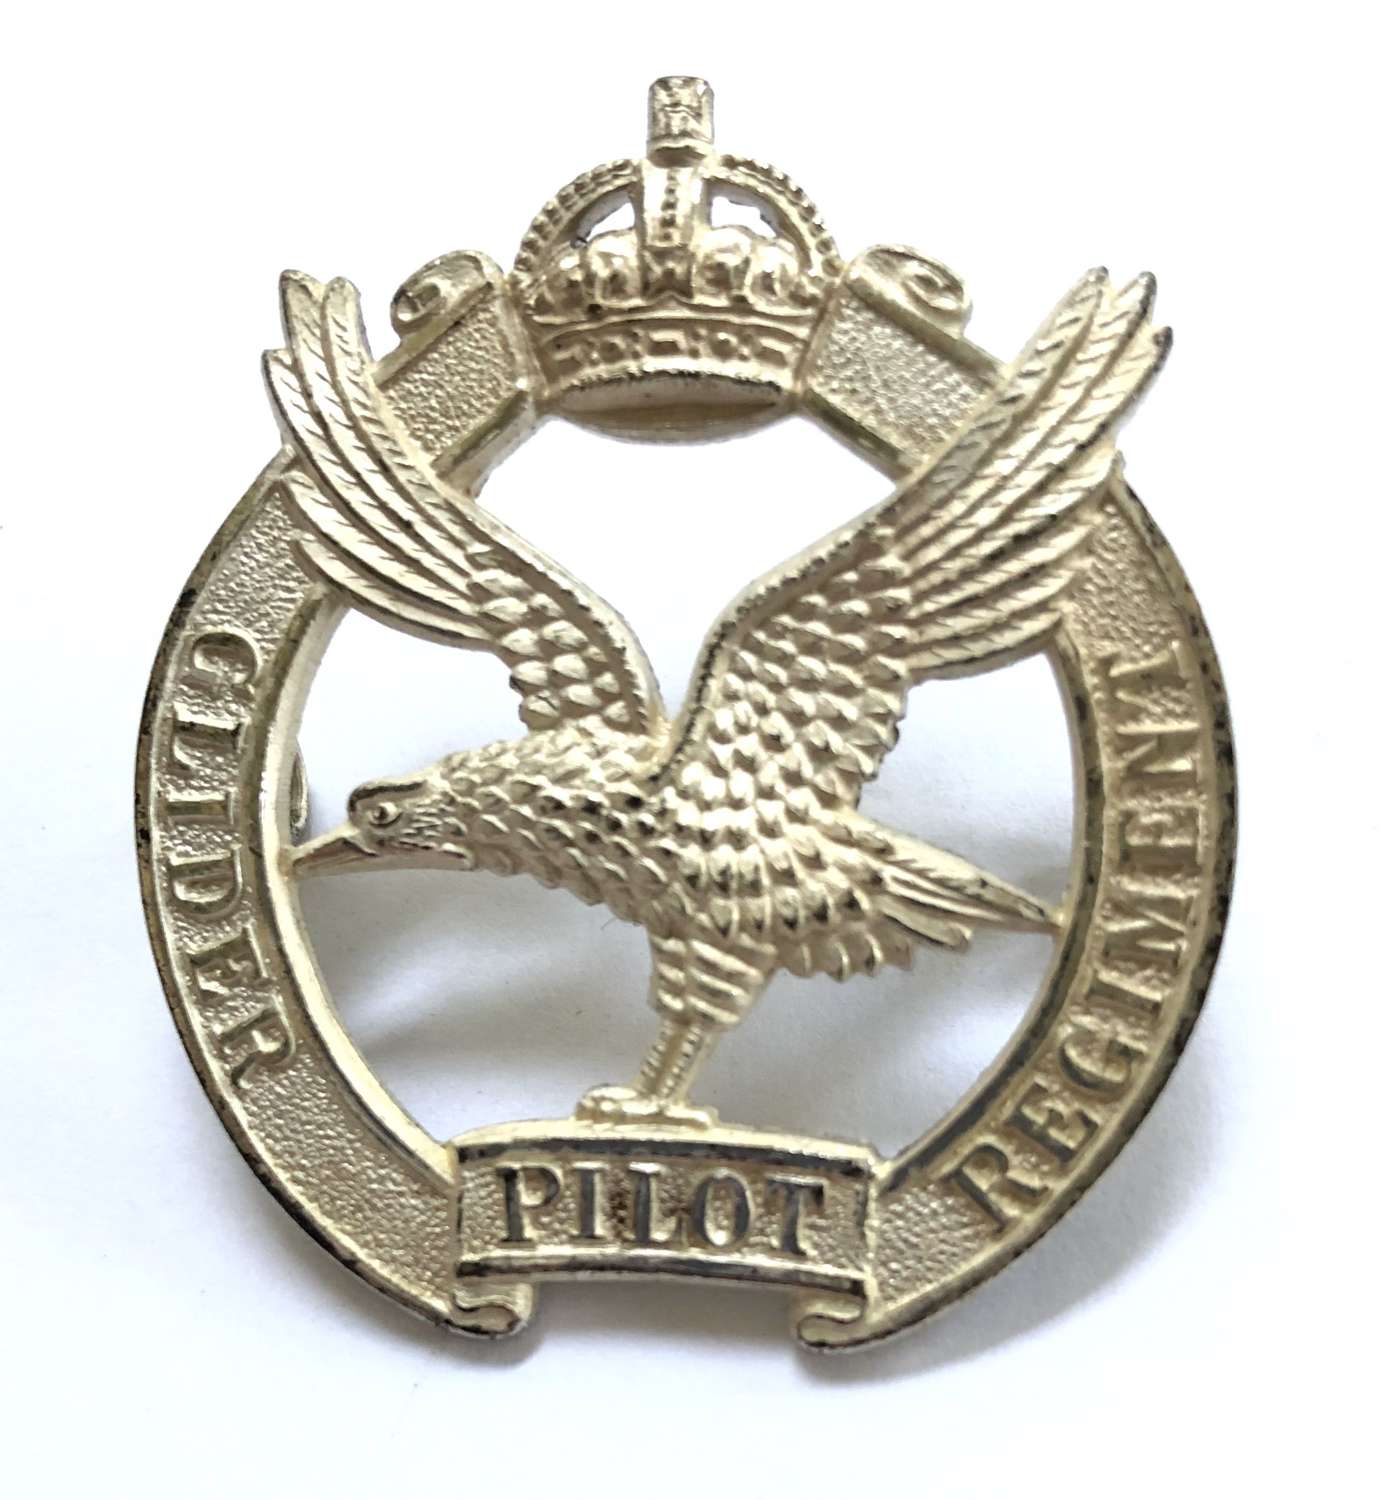 Glider Pilot Regiment WW2 Officer’s beret badge by Firmin, London